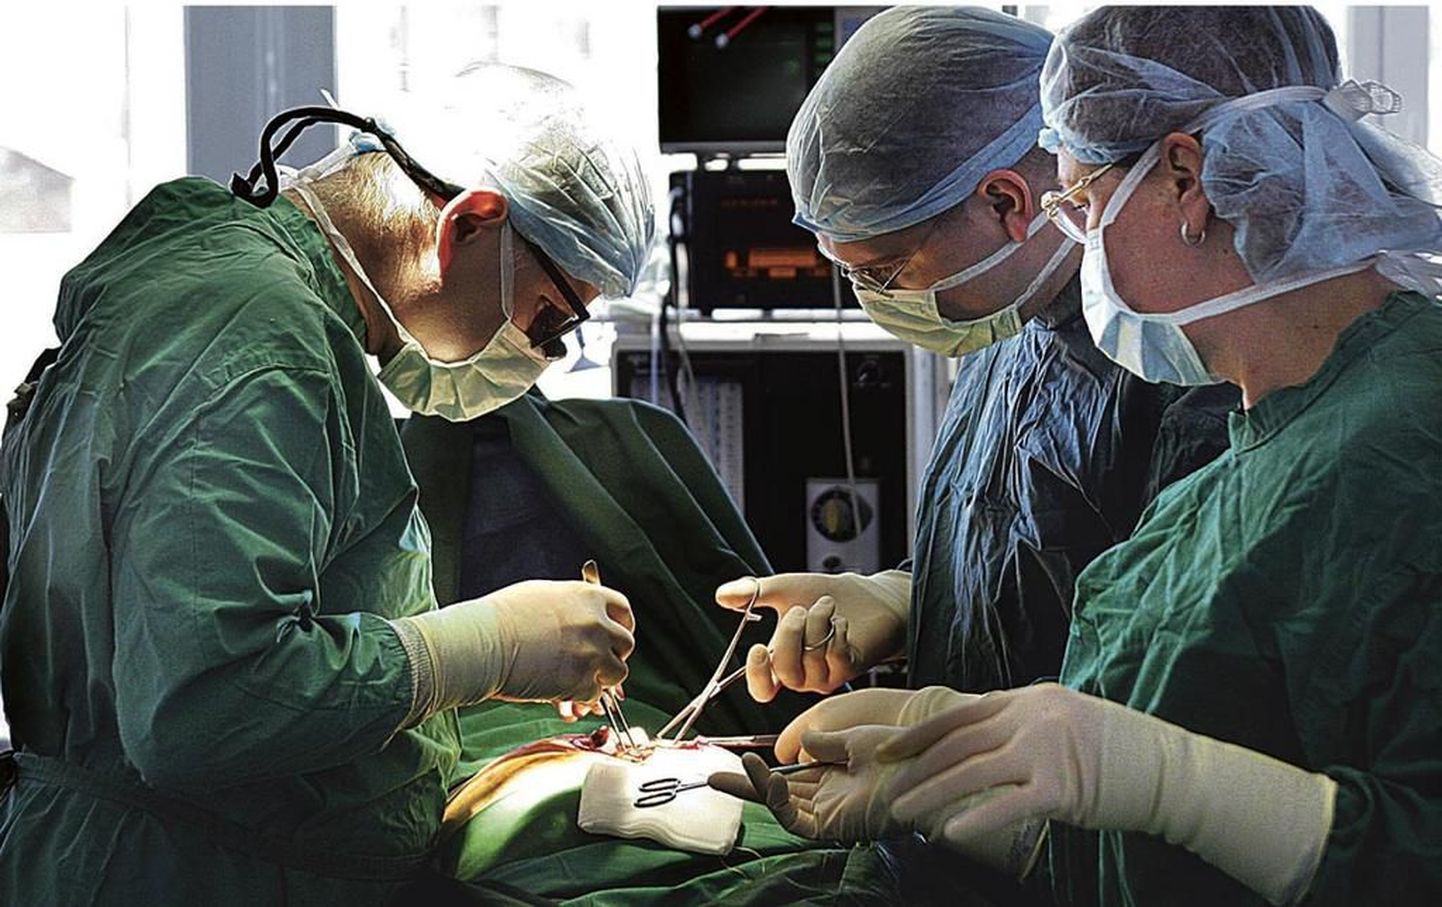 Taastava Kirurgia Kliiniku kirurg Olavi Vasar (vasakul) ja kirurgia resident Romek Märtsin teevad aastas hulga keerulisi ja mahukaid lõikusi, mida ise nimetavad vastandina ilukirurgiale kolekirurgiaks.